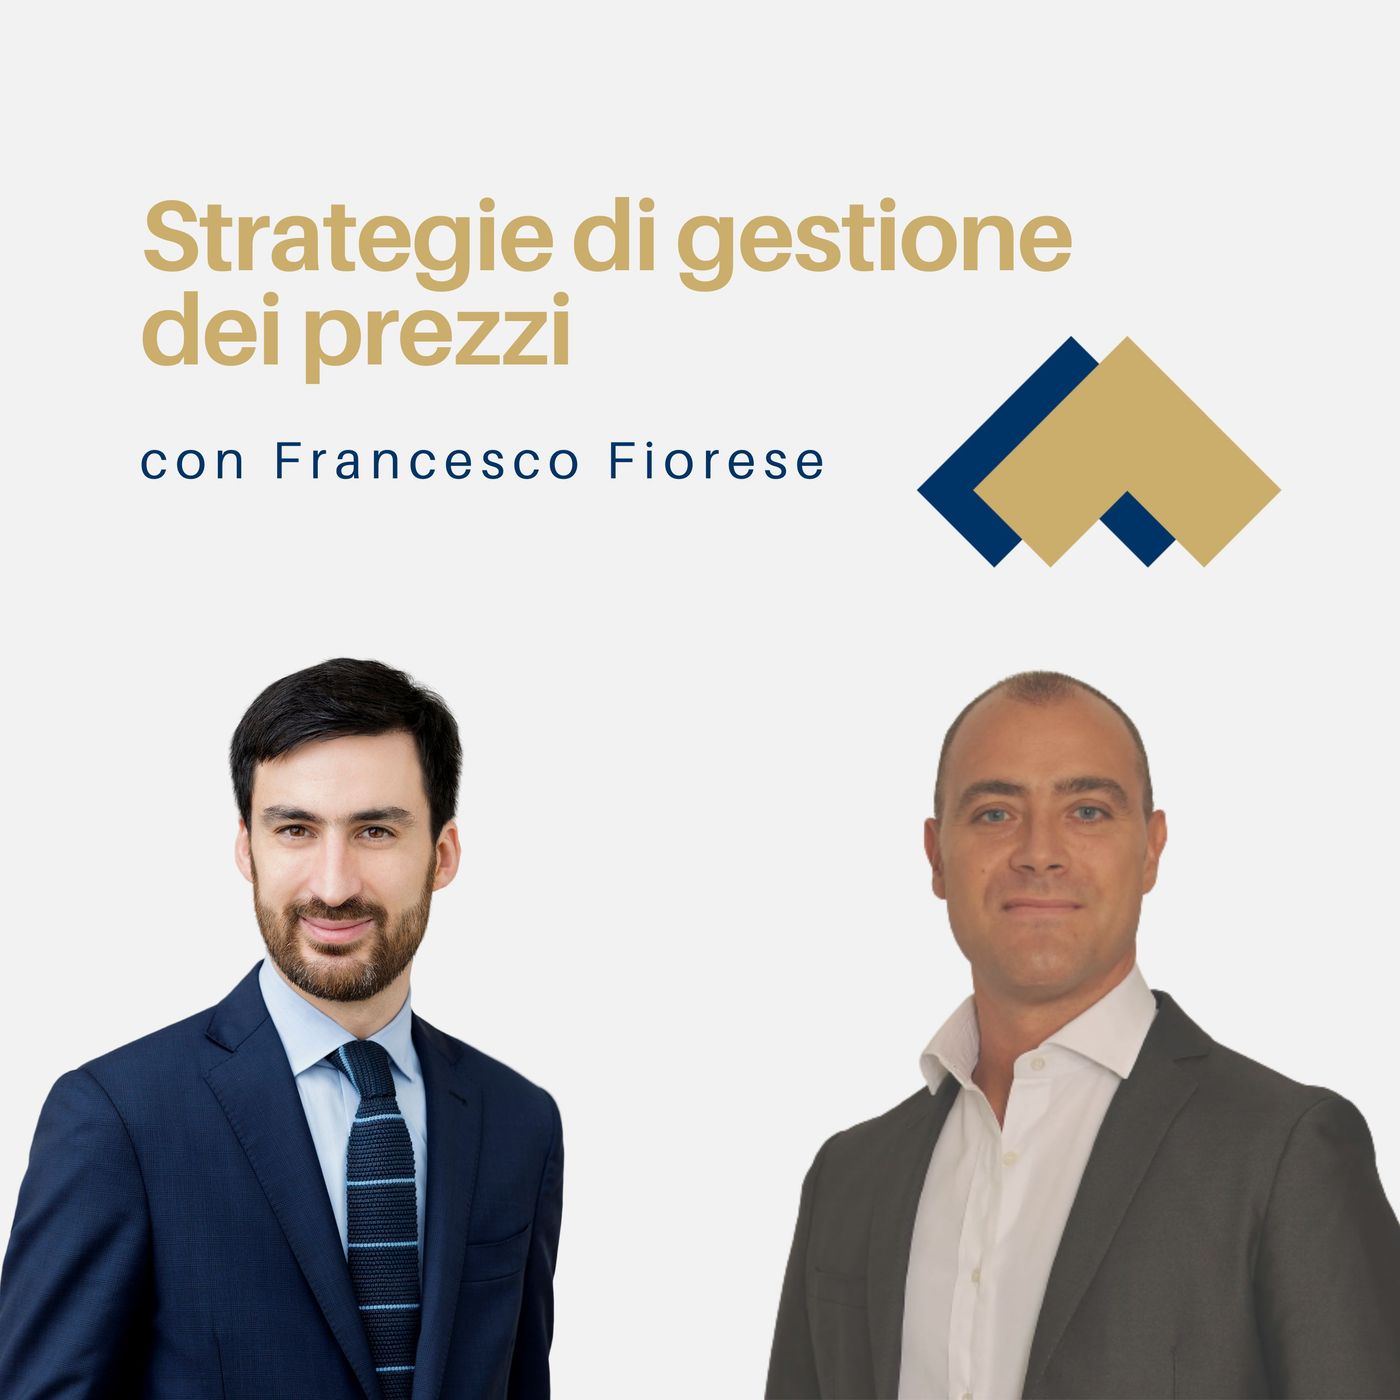 077 - Strategie di gestione dei prezzi con Francesco Fiorese